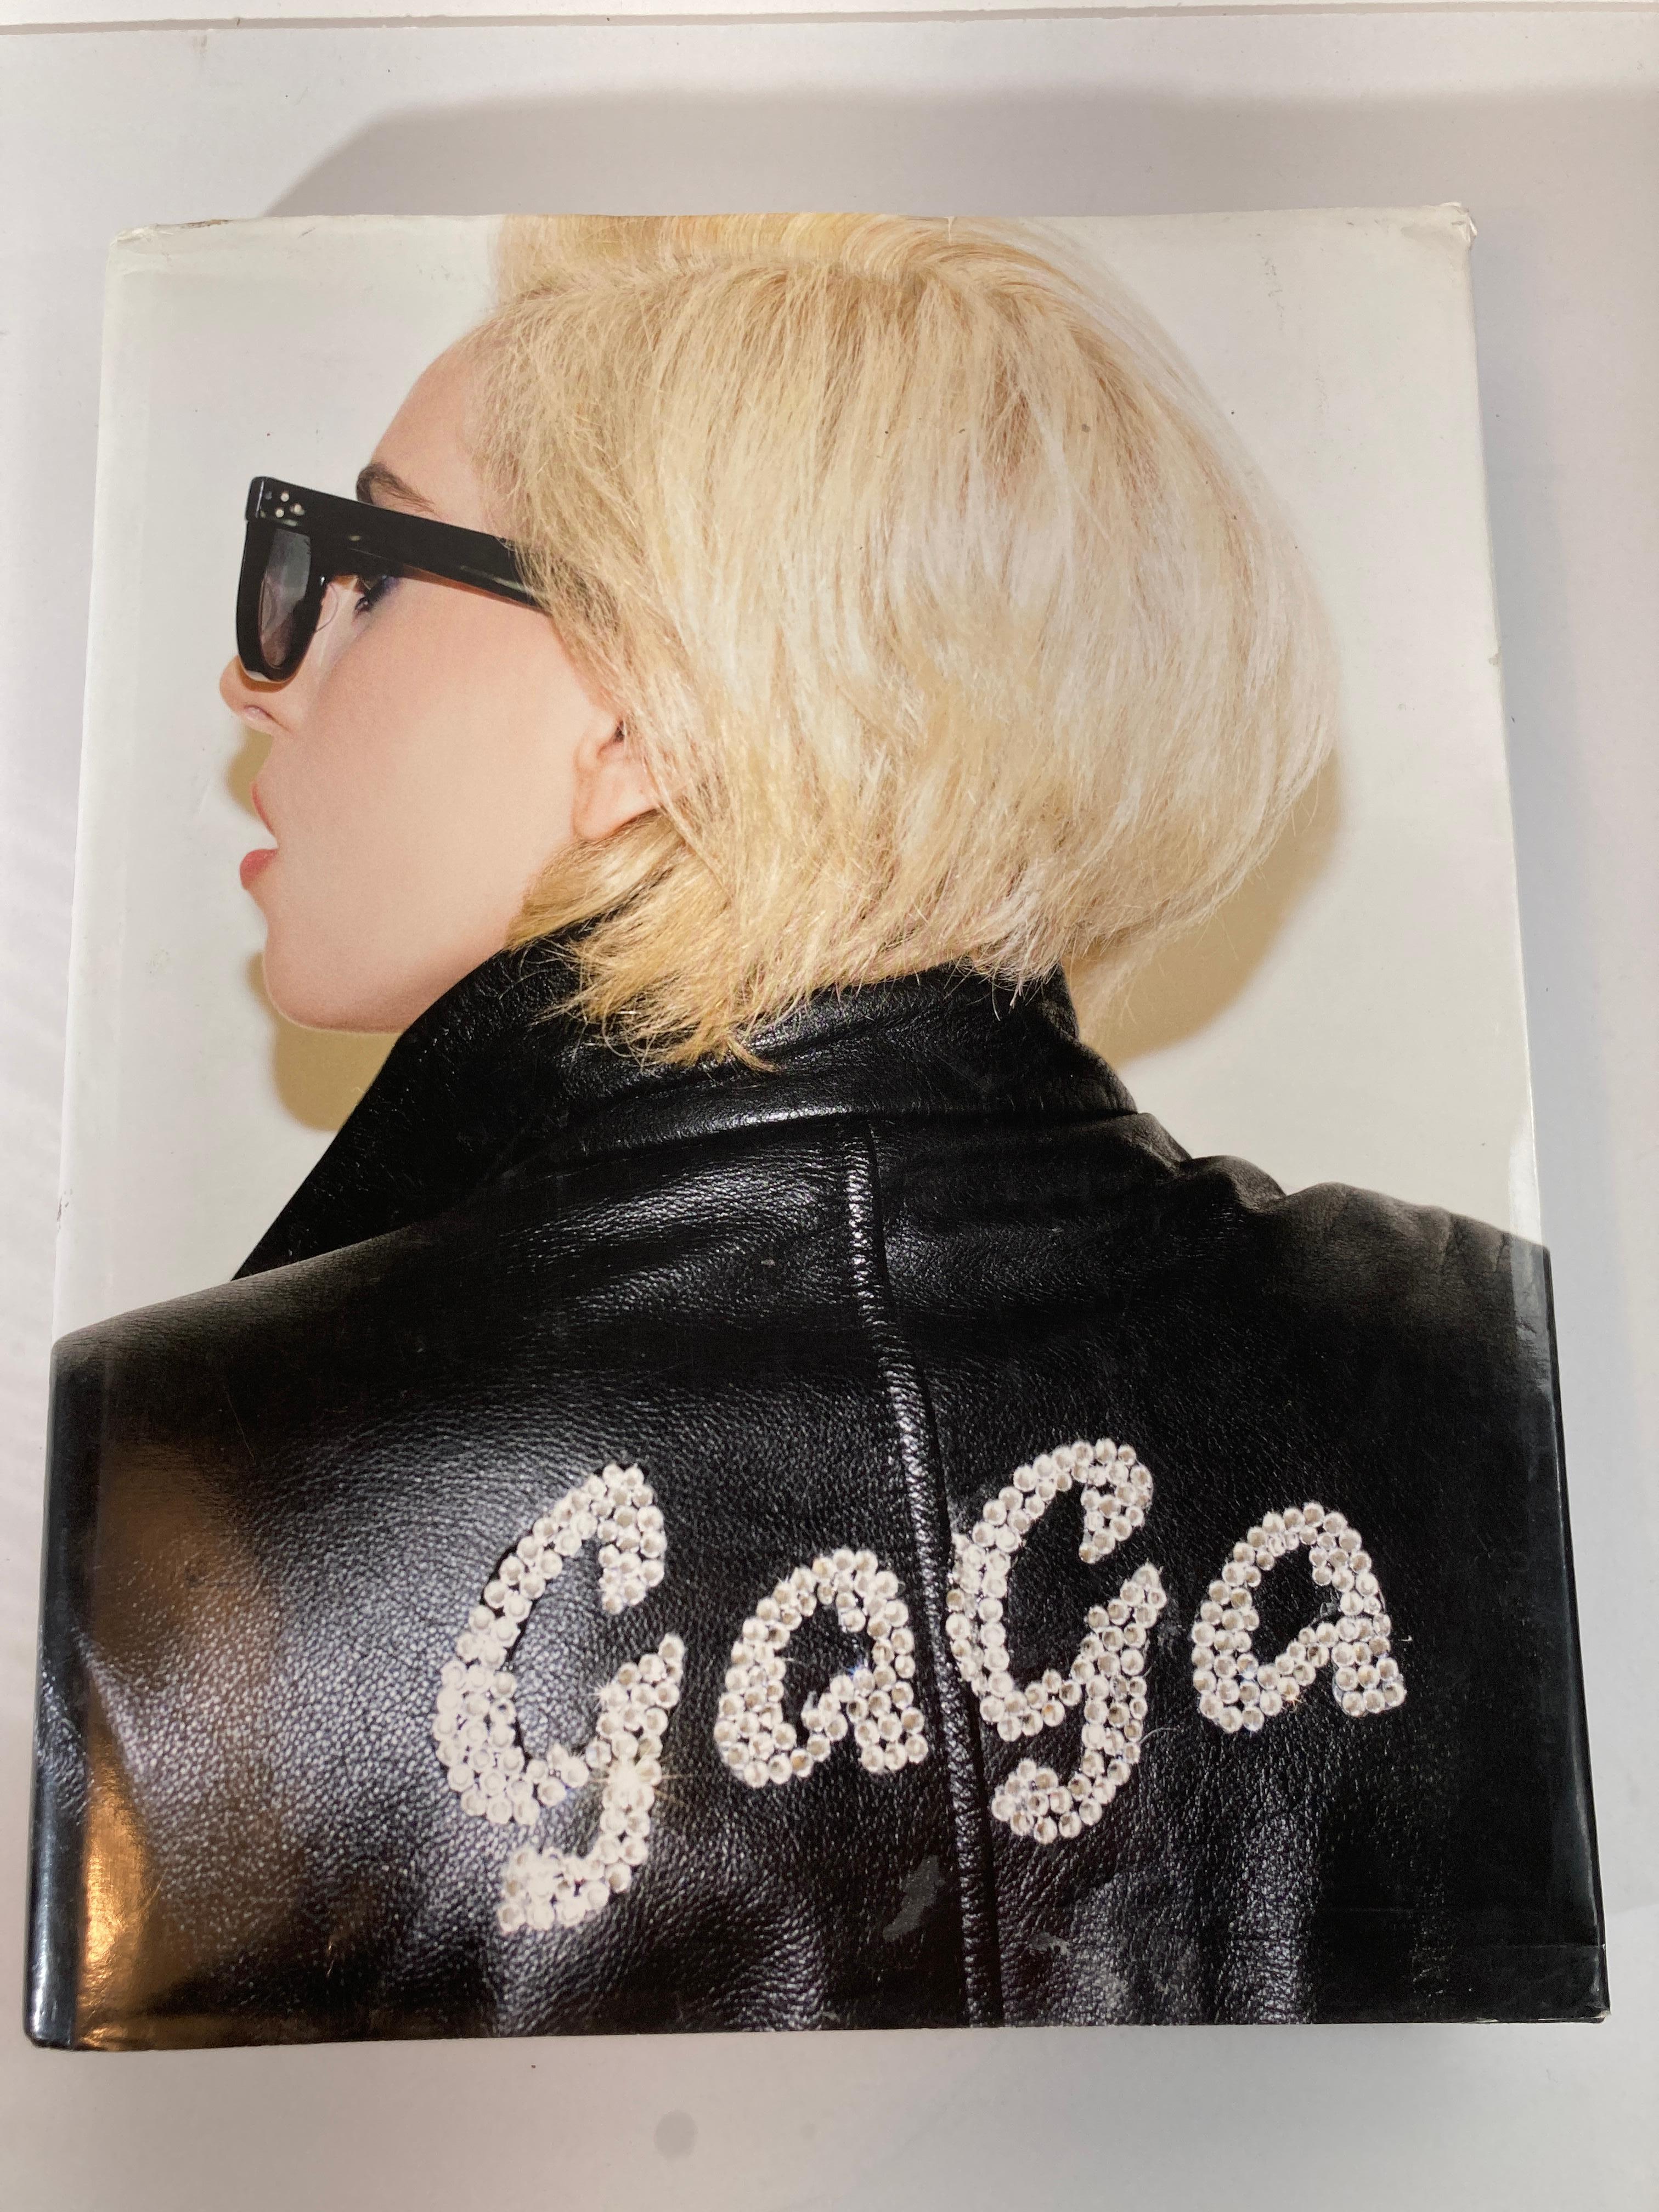 Lady Gaga X Terry Richardson großes gebundenes Buch.
Großdruck, November 22, 2011
Über den Autor
Lady Gaga wurde mit der Veröffentlichung ihres Debütalbums The Fame (2008), das die Hits Just Dance